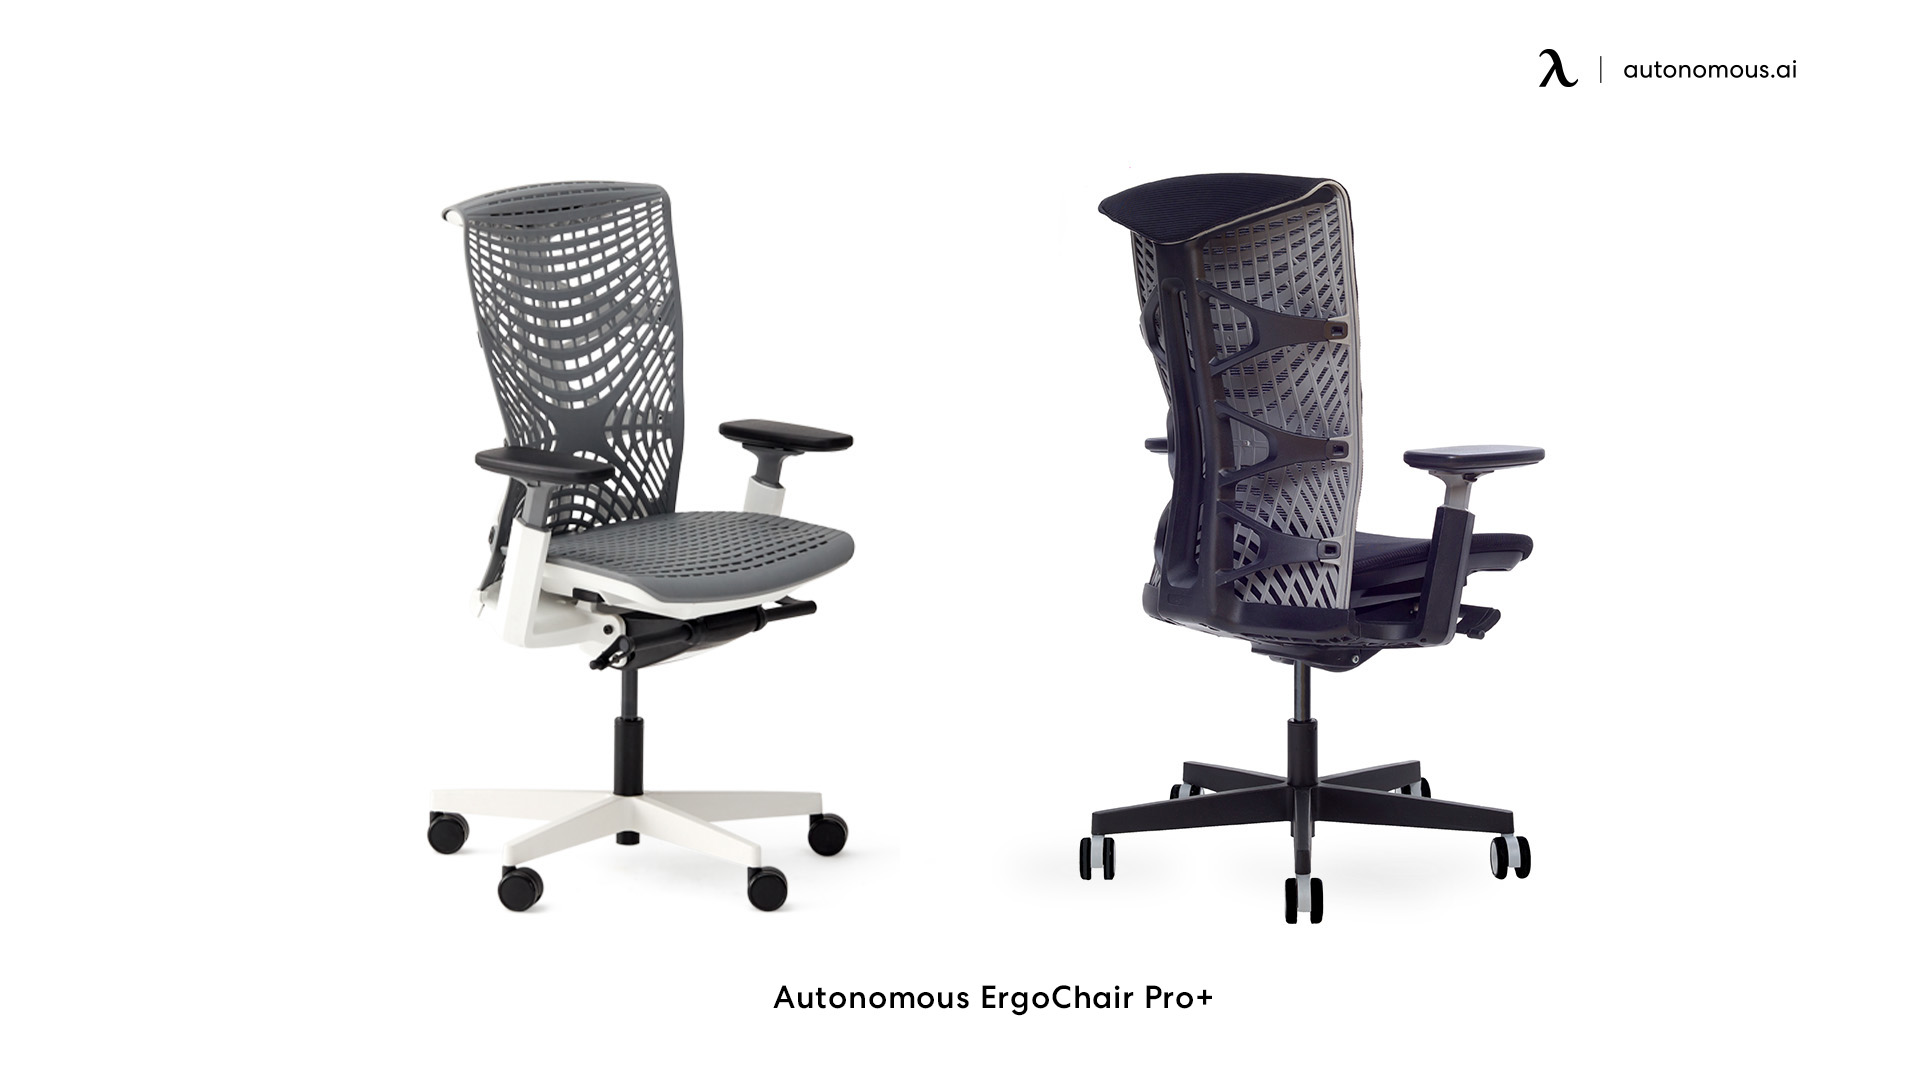 ErgoChair Pro+ comfortable desk chair